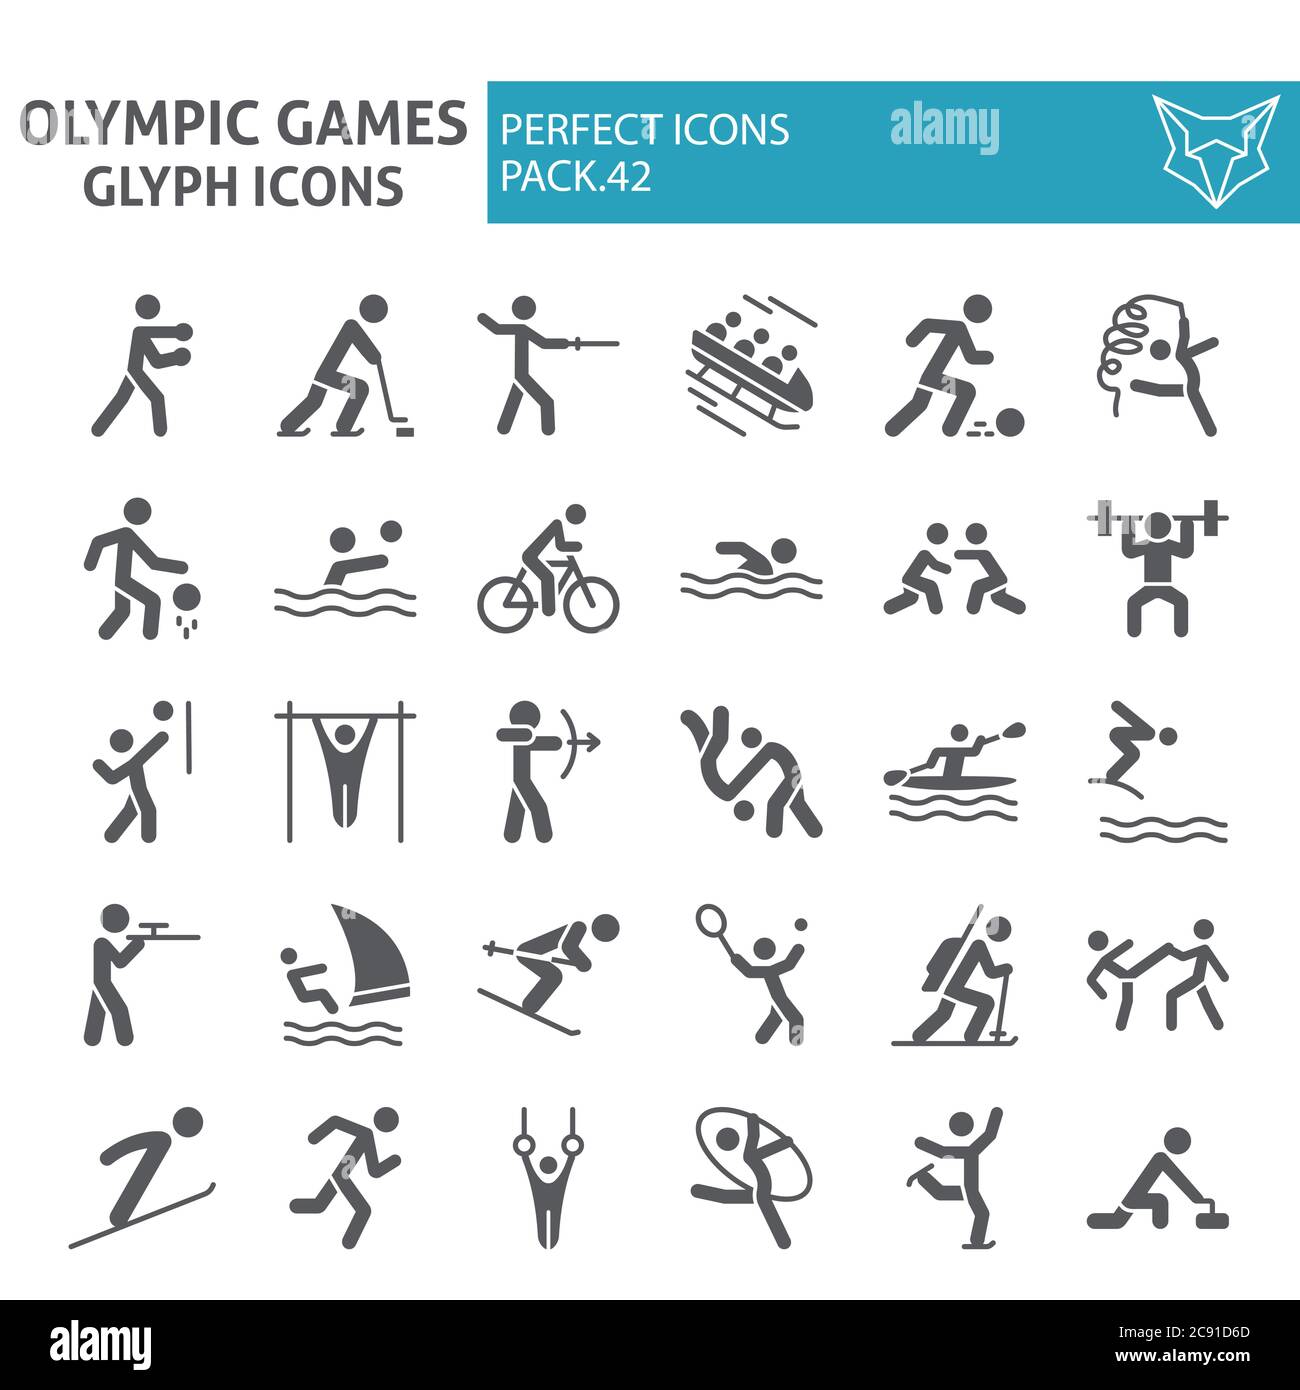 Olympische Spiele Glyphe Icon Set, Sport Symbole Sammlung, Vektor-Skizzen, Logo Illustrationen, Sportler Zeichen solide Piktogramme Paket isoliert auf Stock Vektor